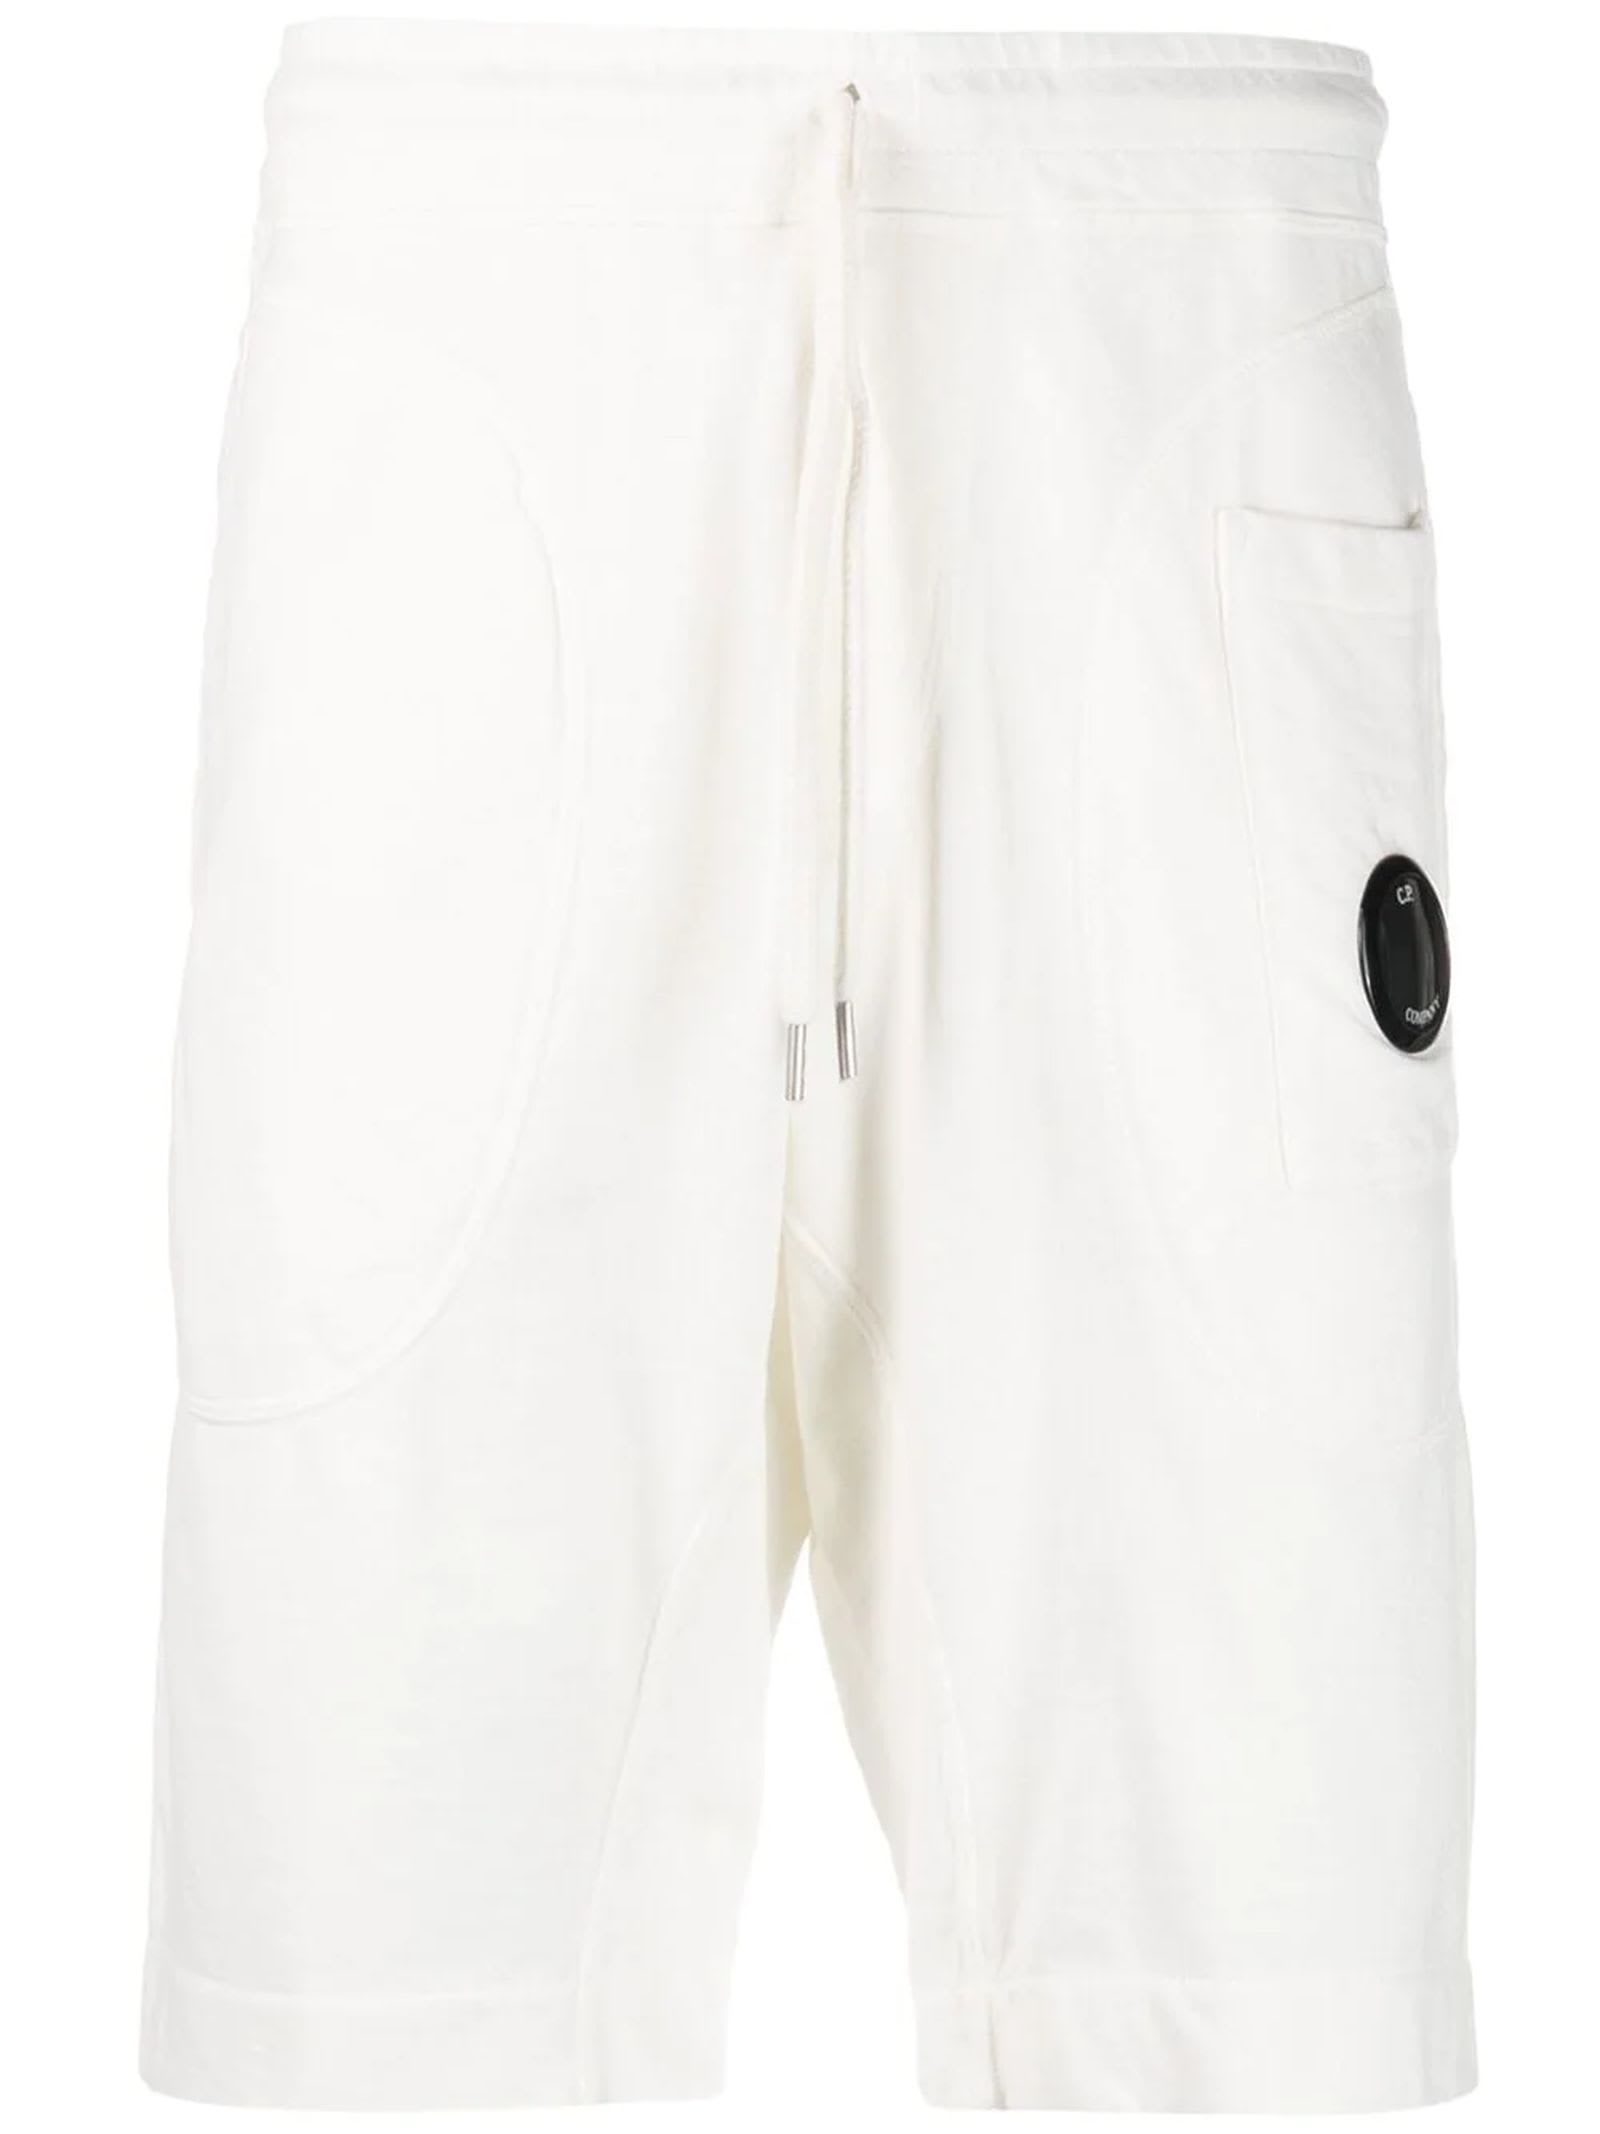 C.P. Company White Cotton Shorts